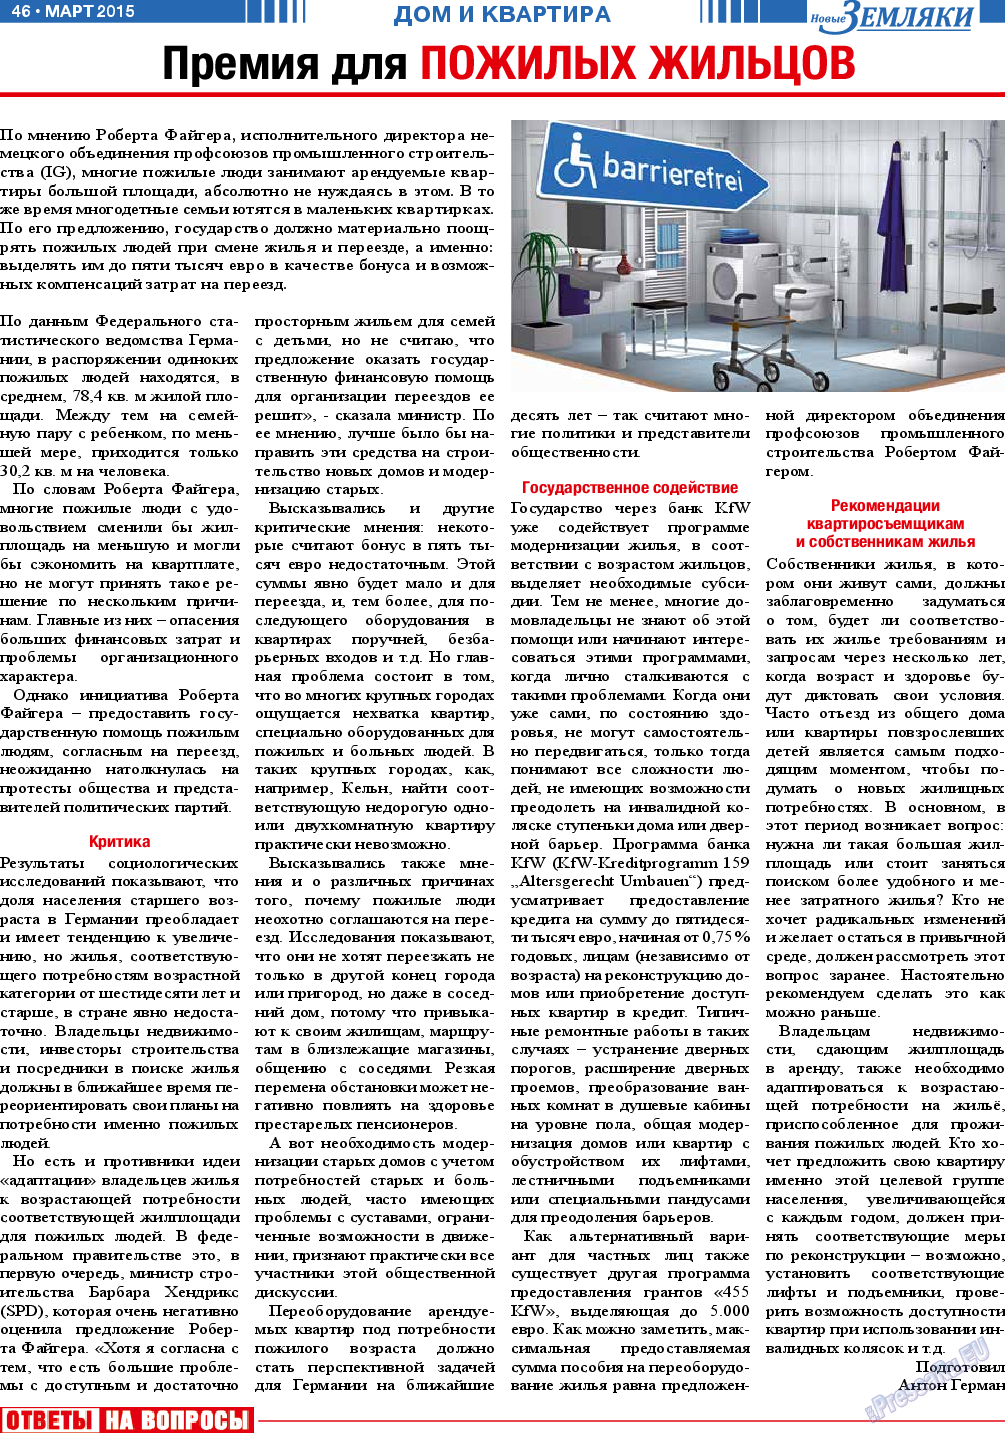 Новые Земляки, газета. 2015 №3 стр.46